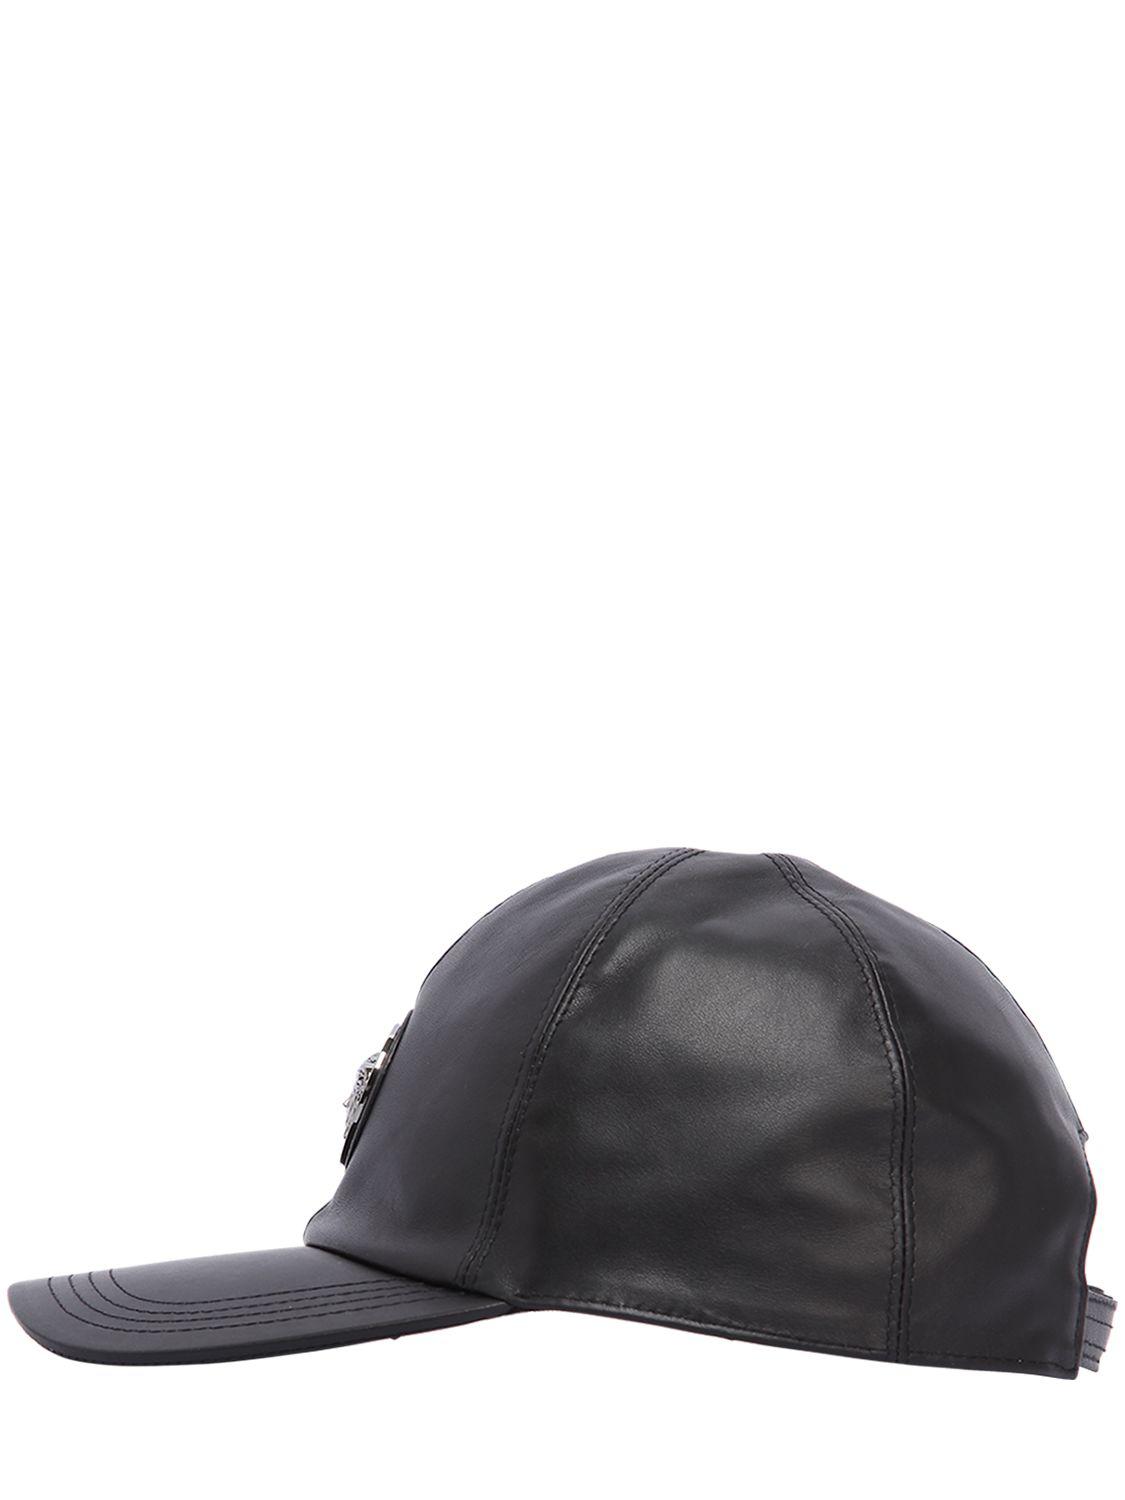 Versace 3d Medusa Leather Baseball Hat in Black for Men - Lyst